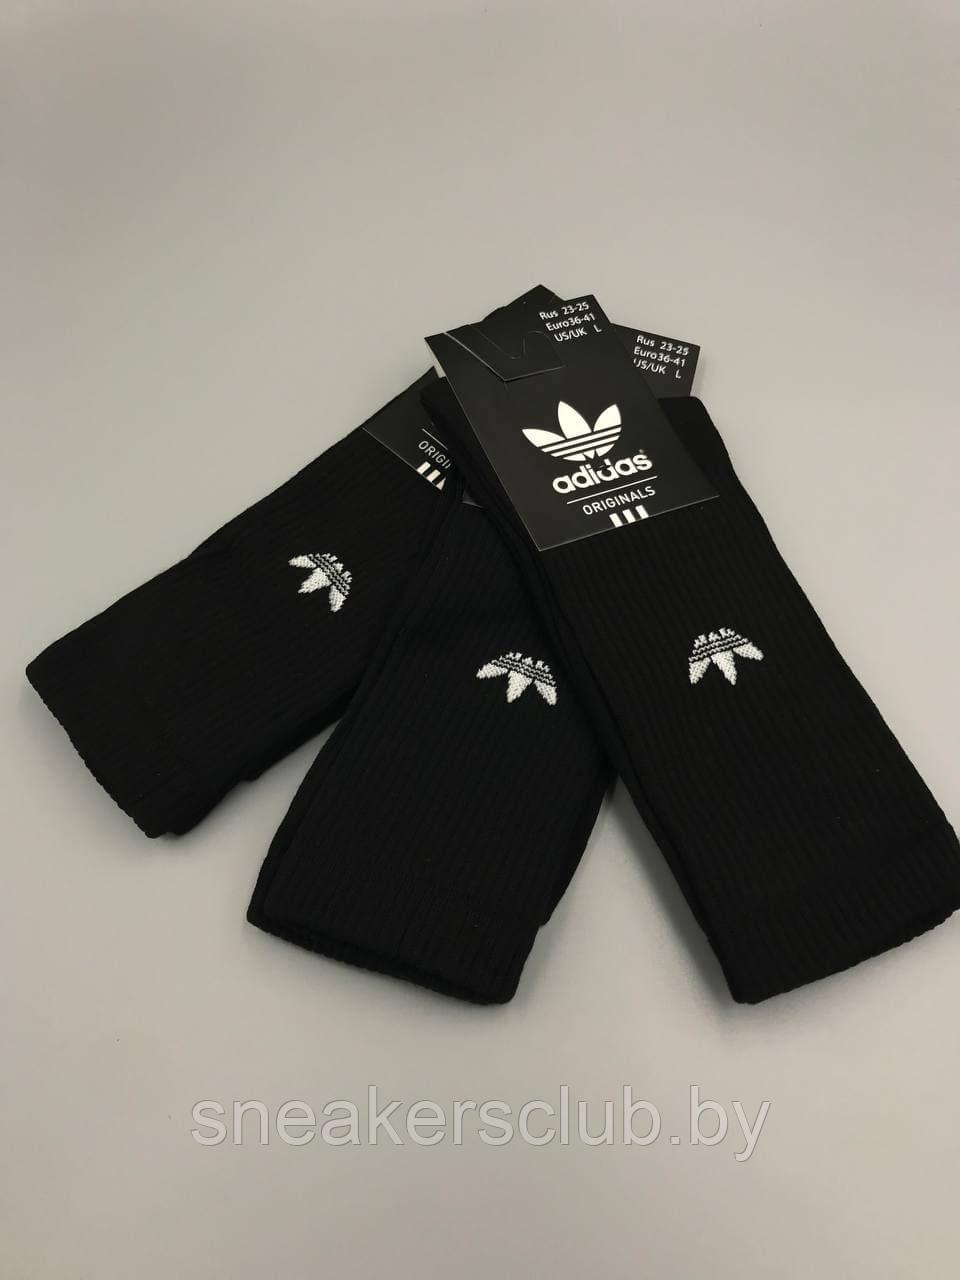 Черные носки Adidas/ размер 36-41/ удлиненные носки/ носки с резинкой